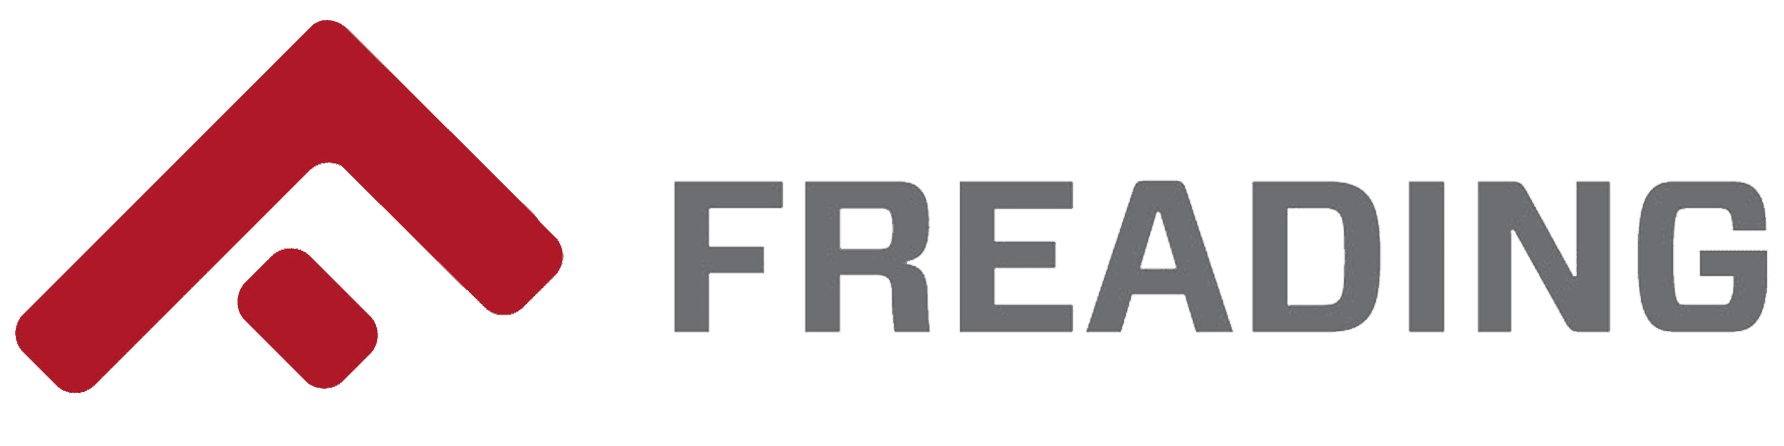 Freading Logo 